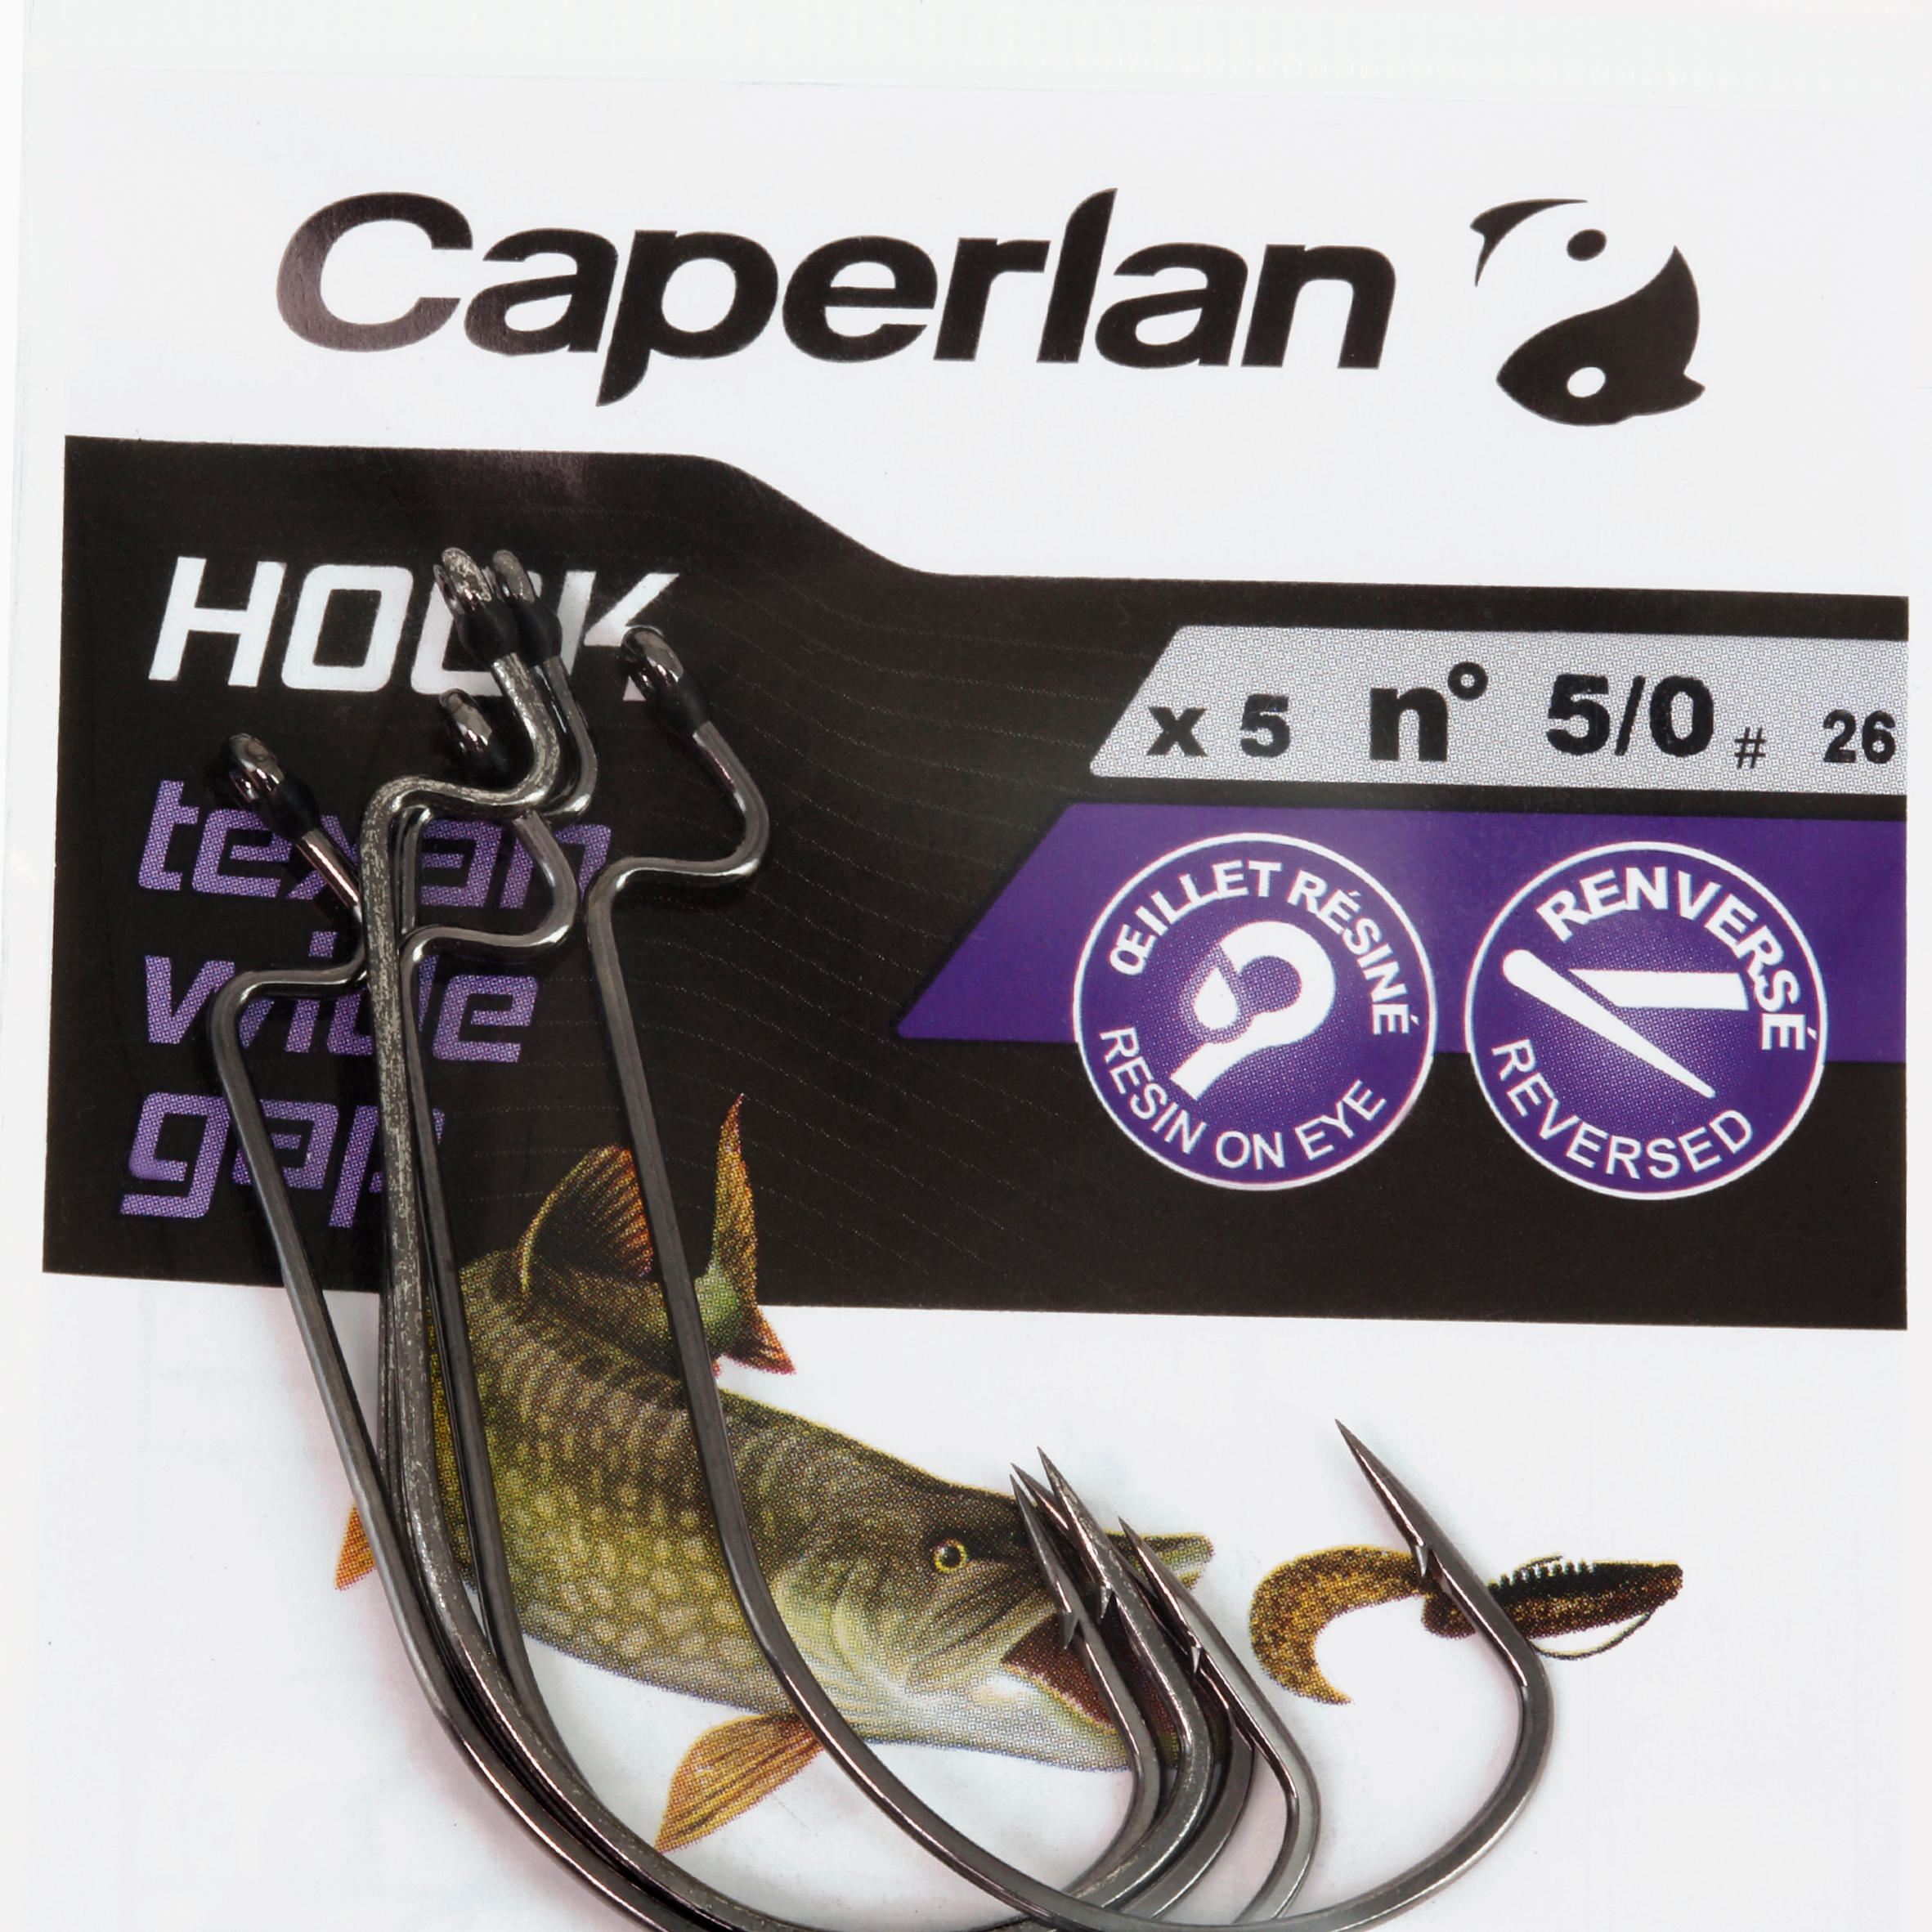 TEXAN HOOK TEXAN WIDE GAP 5/0 FISHING HOOK  5/6